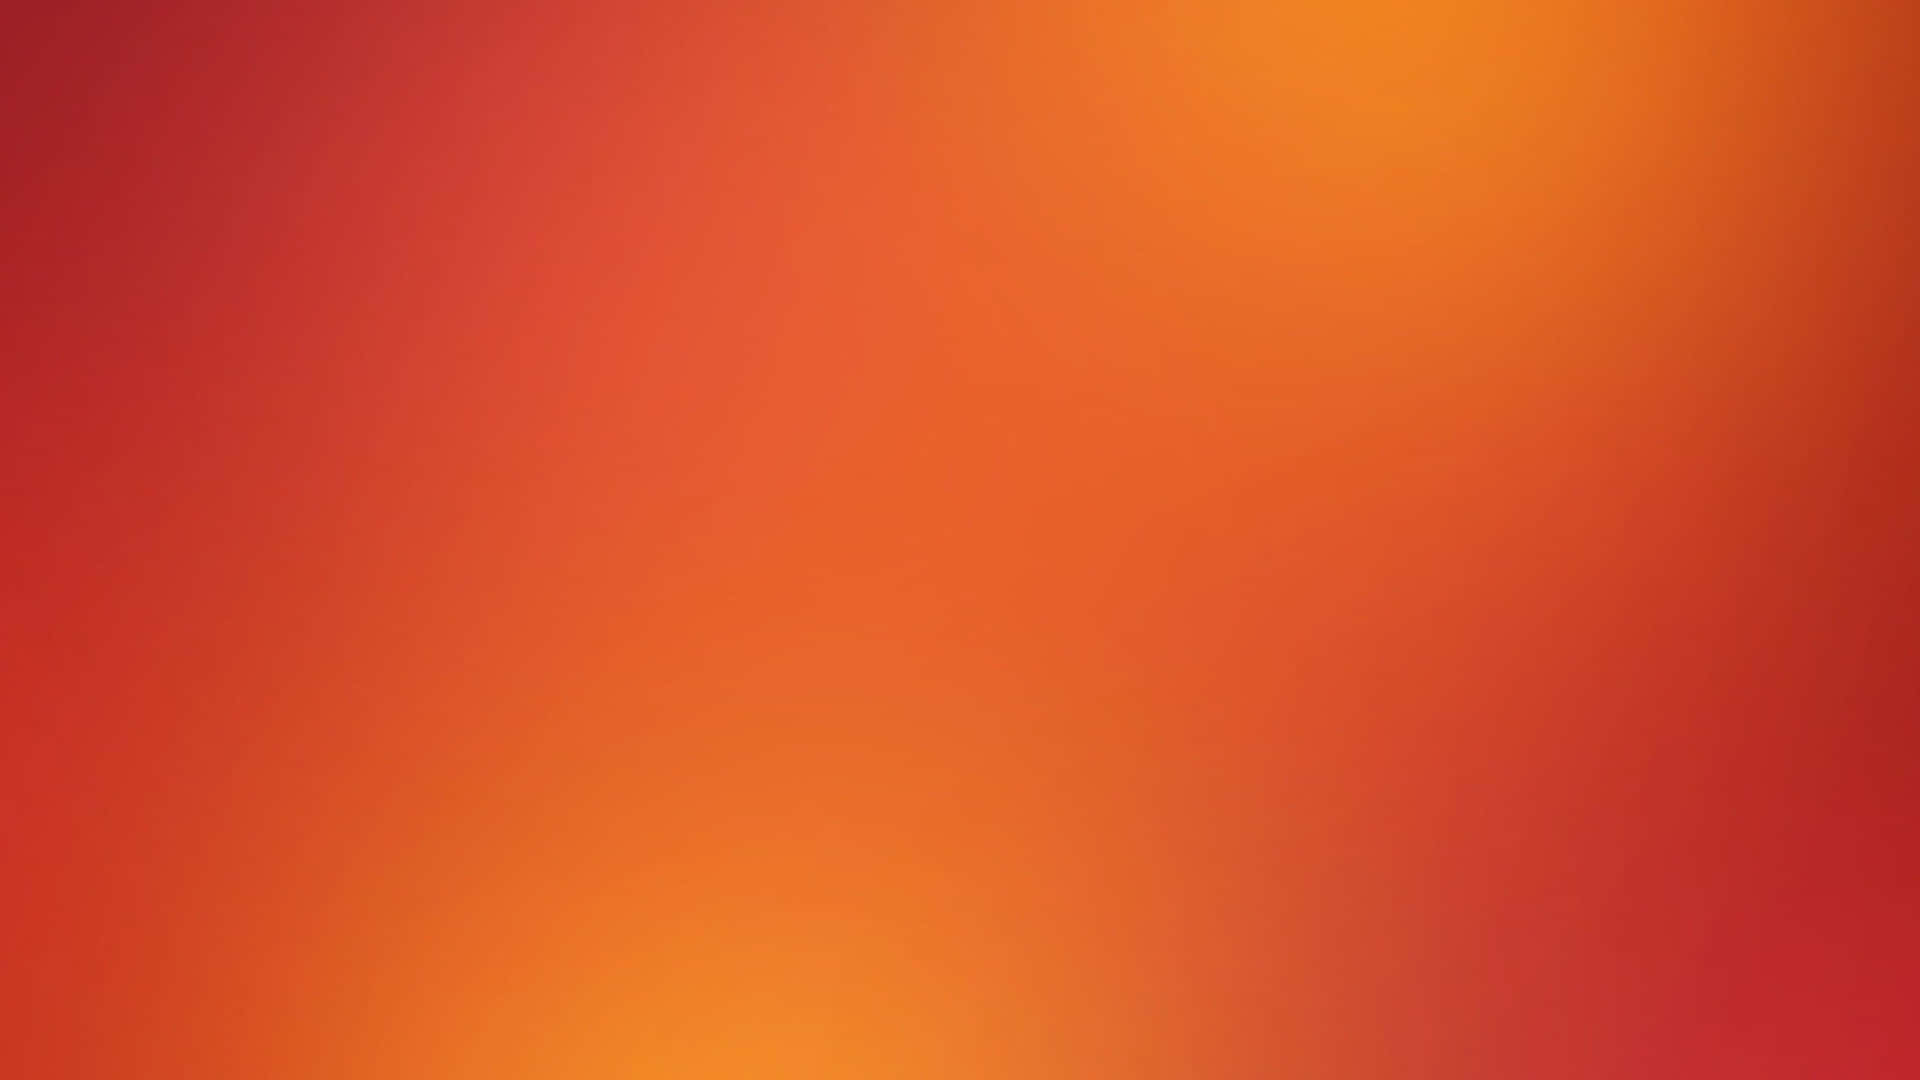 Bold and modern orange gradient background